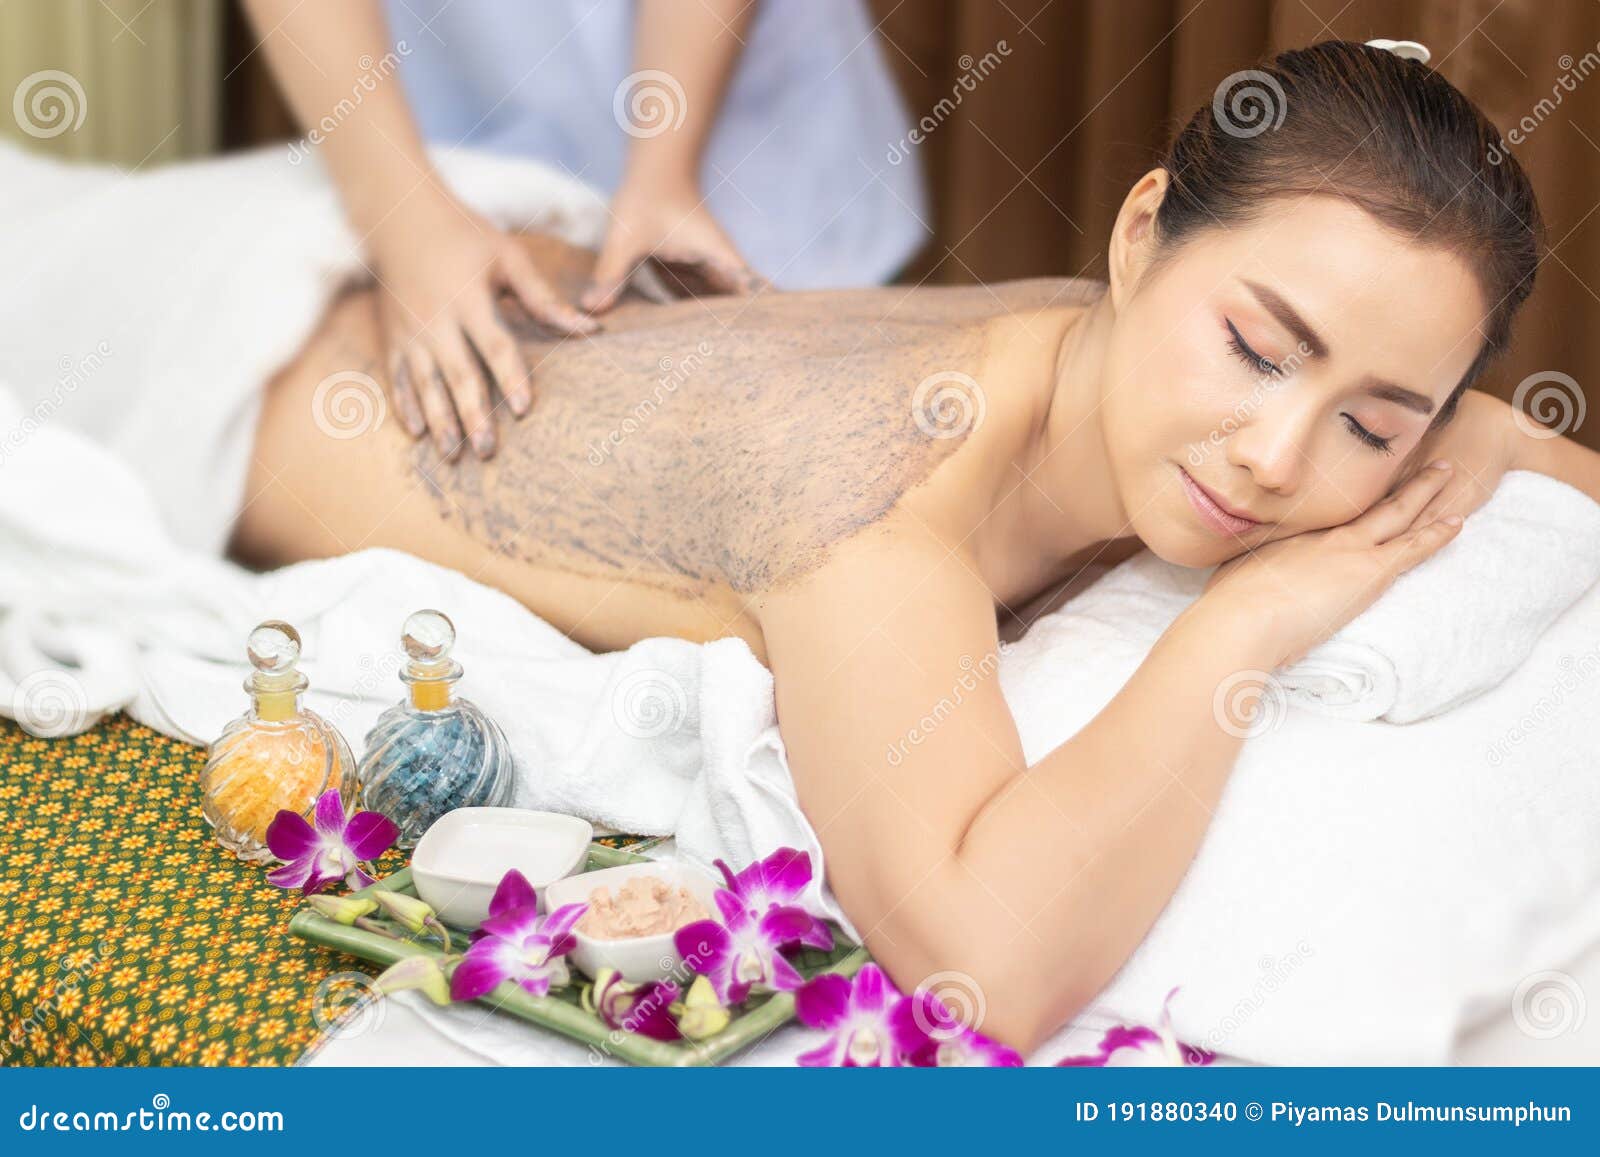 Naked Massage